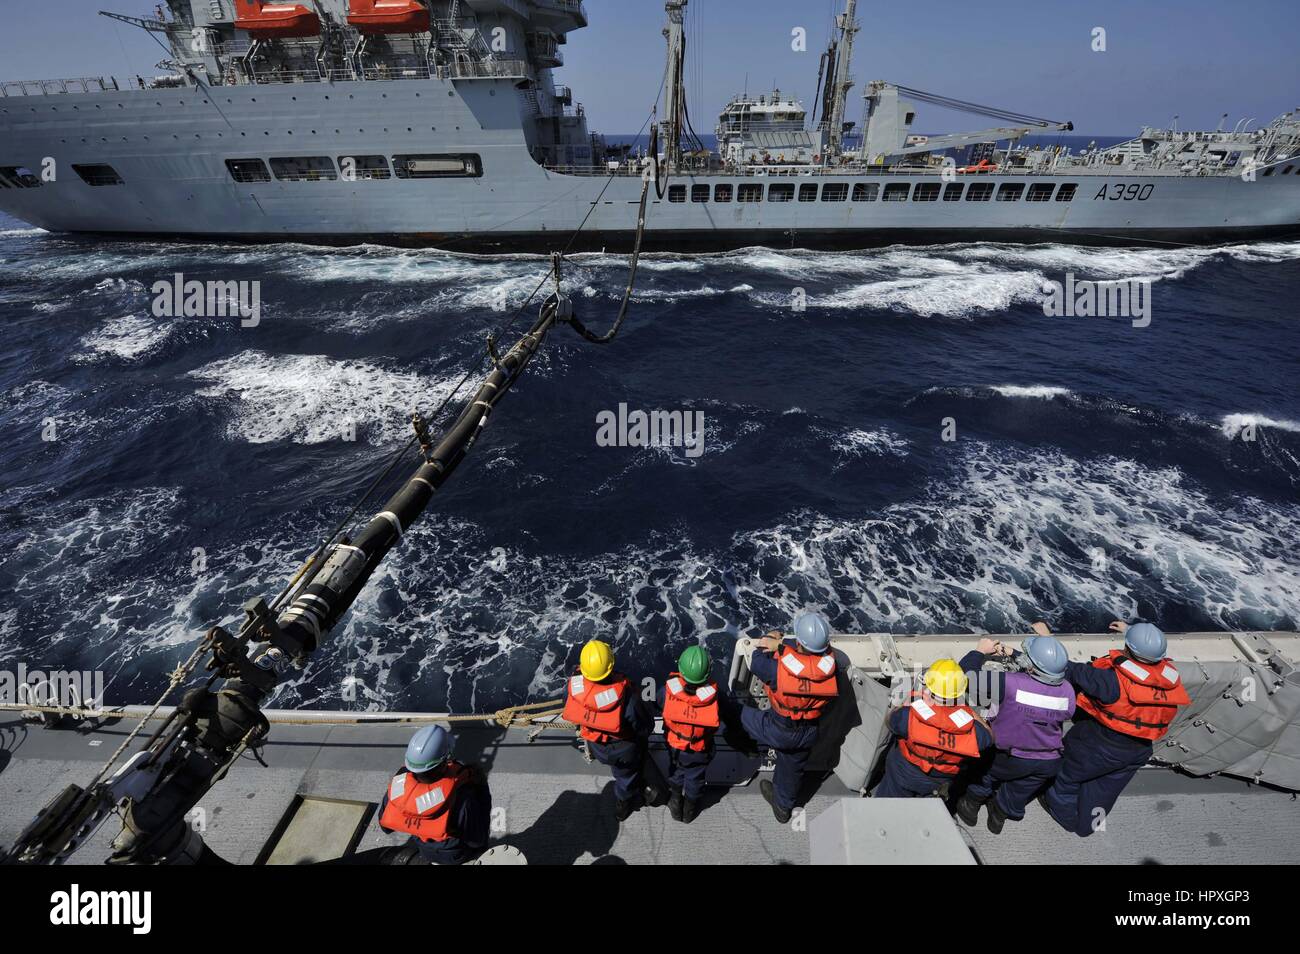 Missiles guidés USS Jason Dunham (DDG 109) et de la Royal Navy Fleet flotte auxiliaire pétrolier rapide Wave Ruler (A390) au cours d'un ravitaillement en mer, Mer d'Arabie, 2012. Image reproduite avec l'US Navy. Banque D'Images